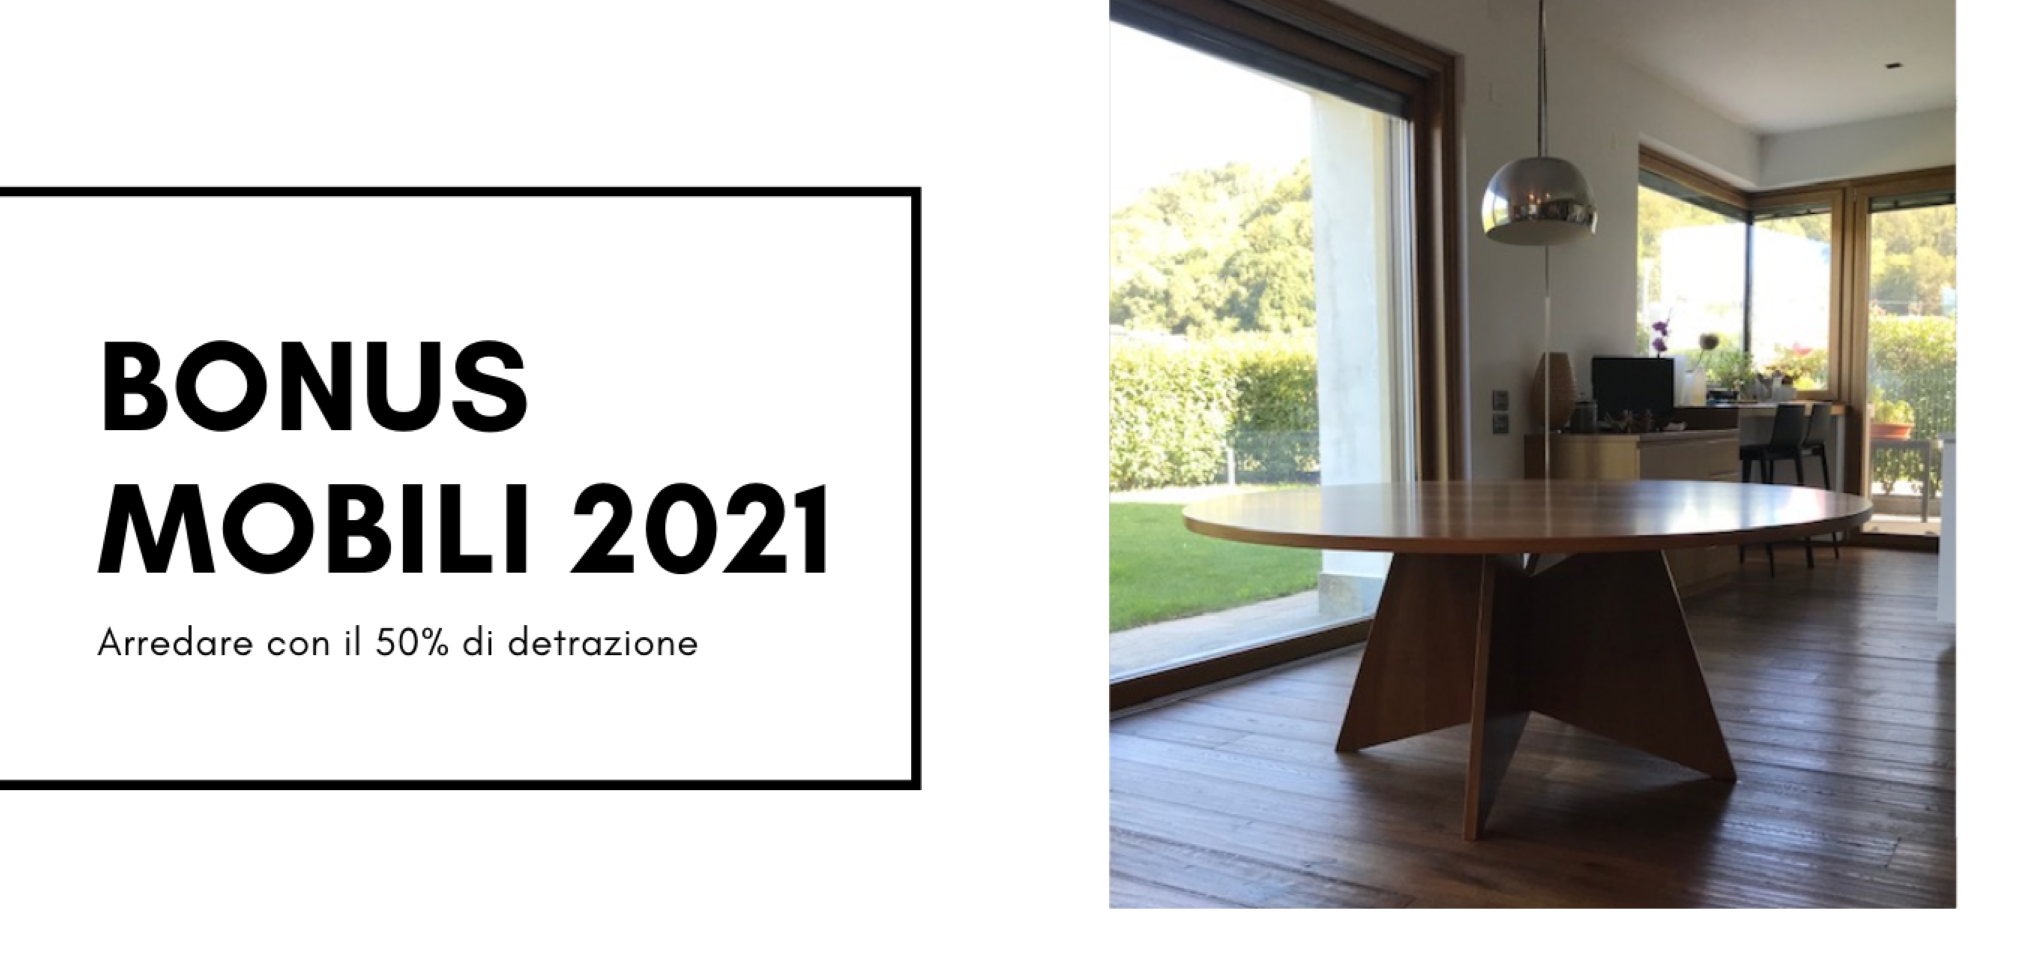 tavolo con base di design e scritta bonus mobili 2021.